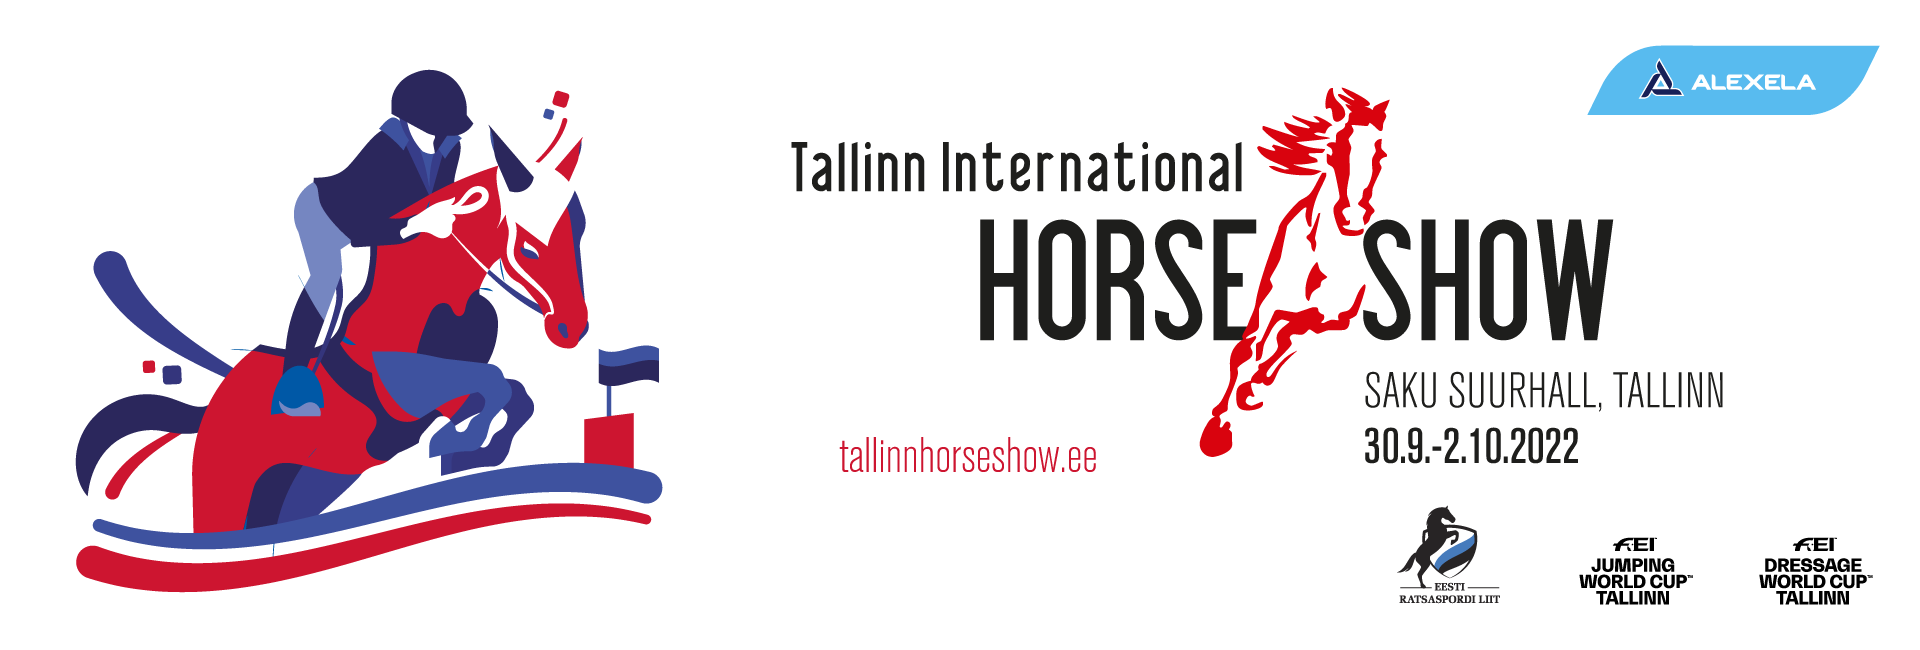 Tallinn International Horse Show 2021